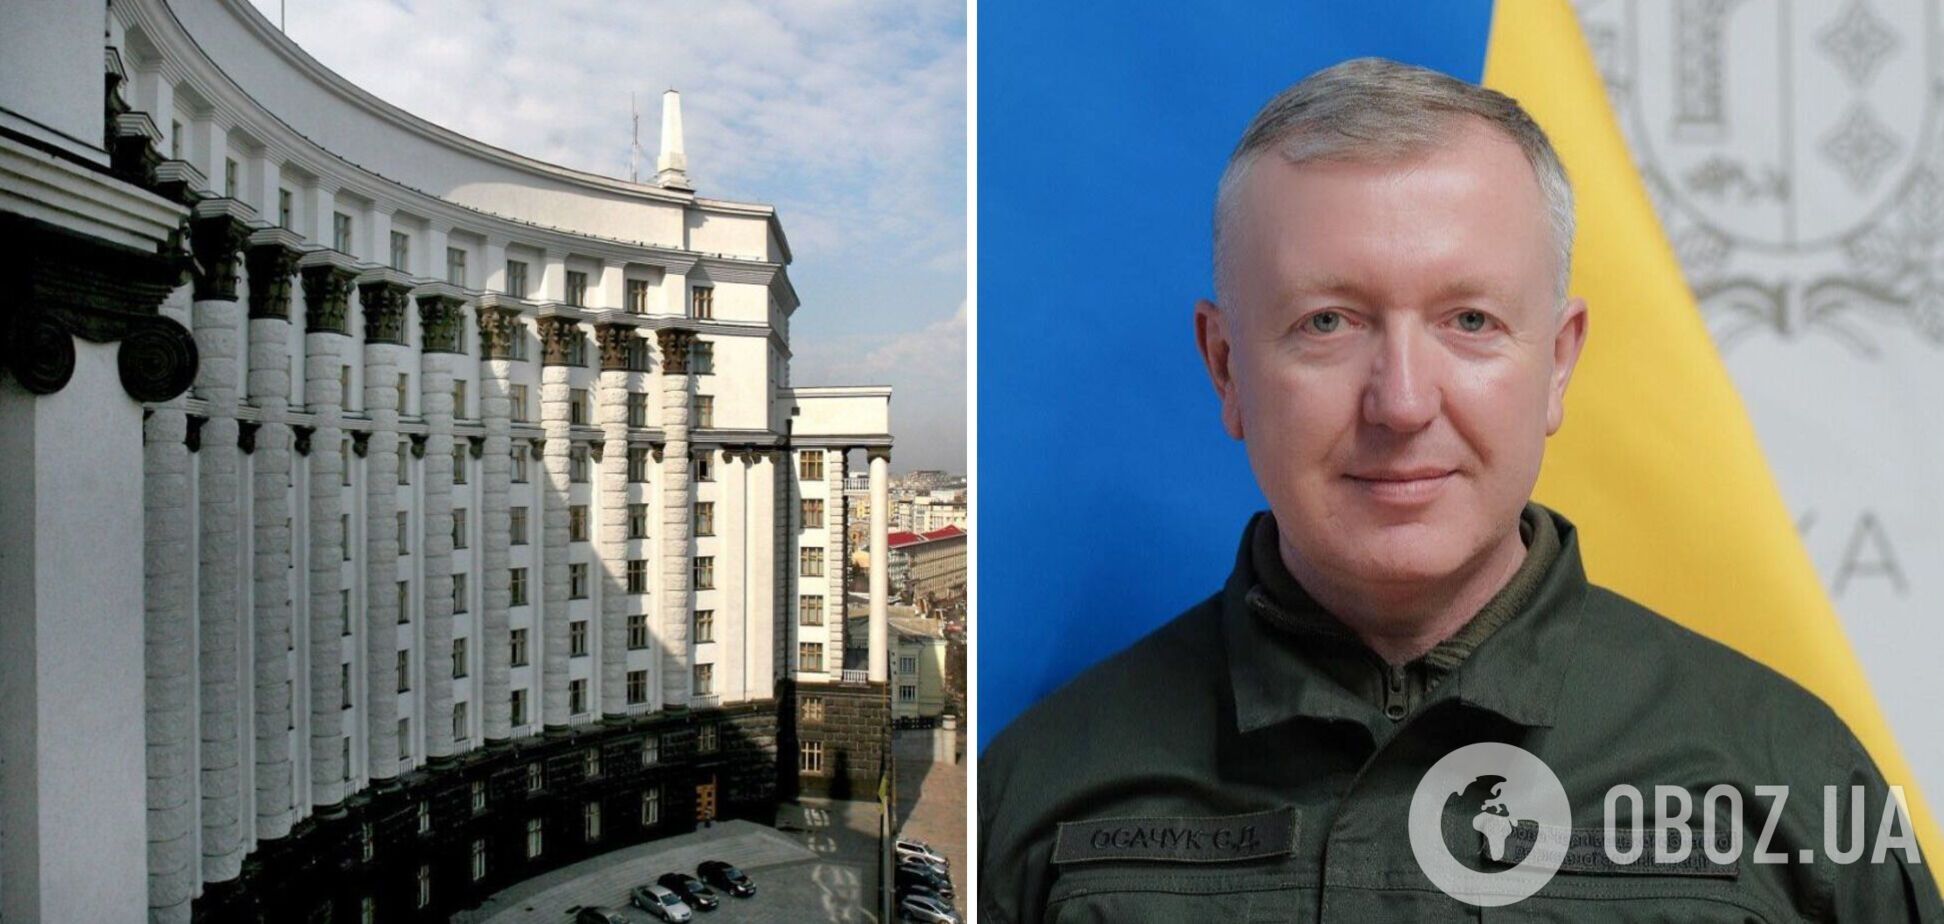 Кабмин согласовал увольнение главы Черновицкой ОГА Осачука